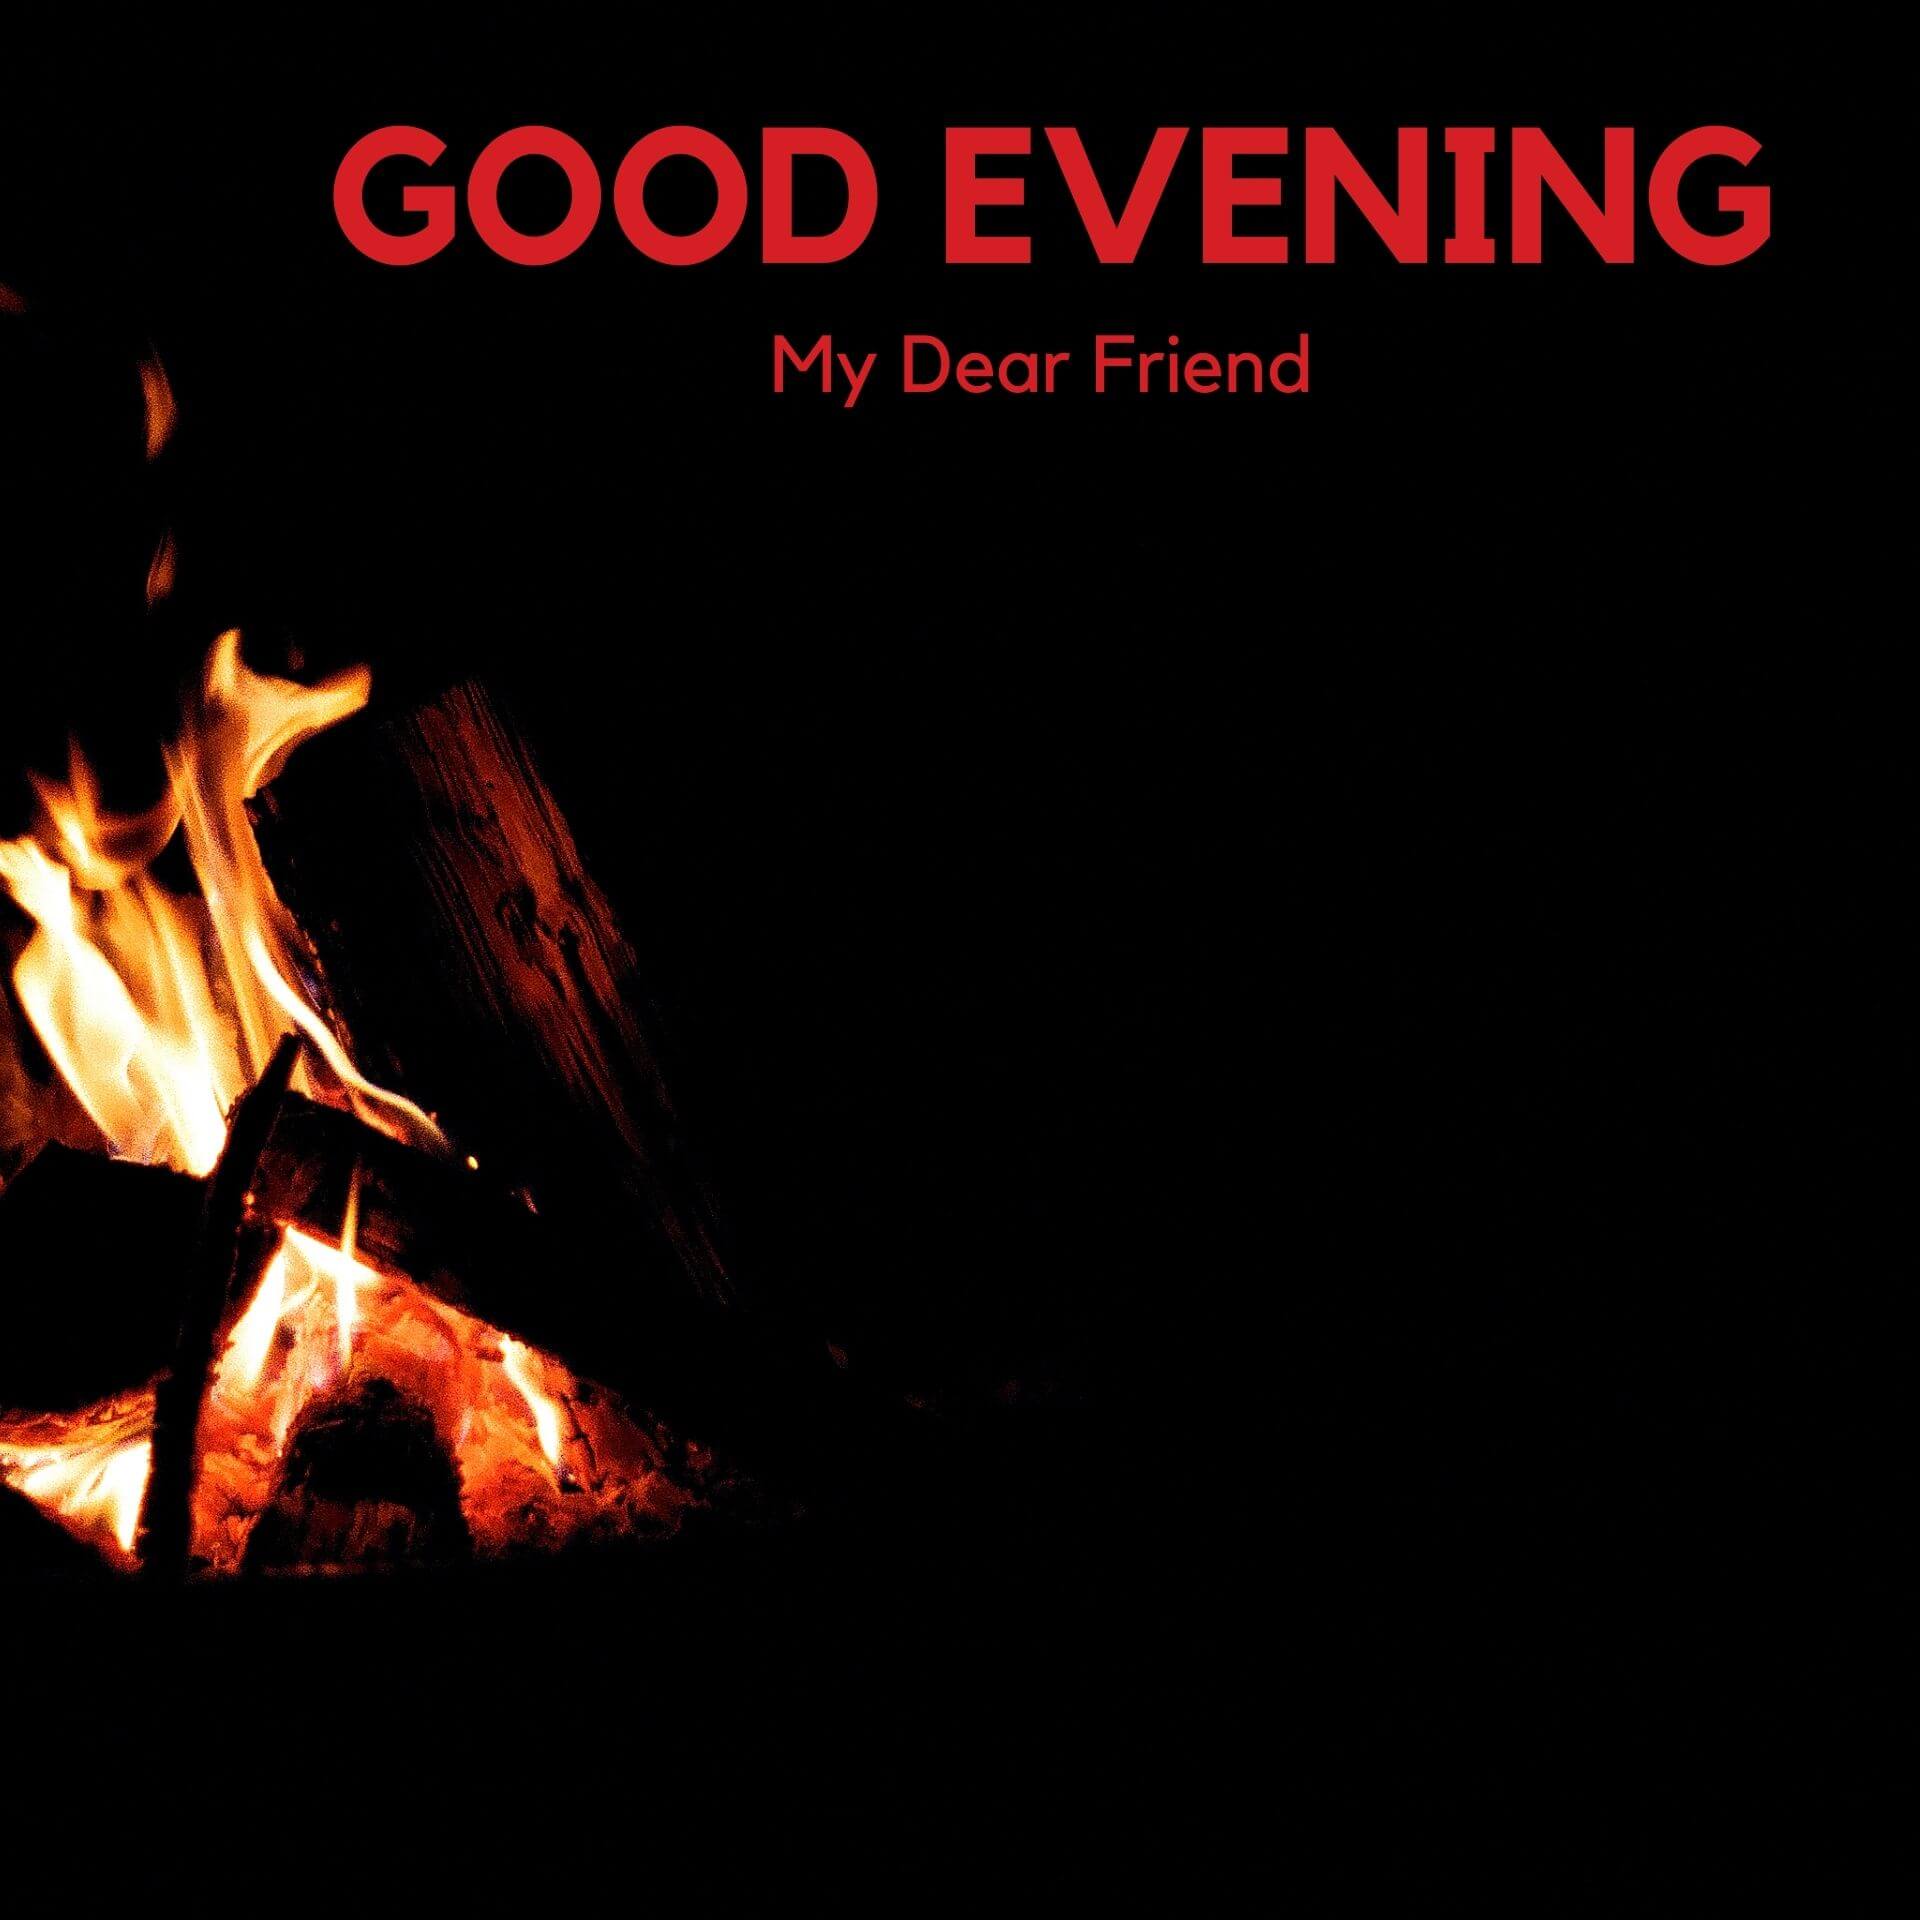 Romantic Good Evening Wallpaper Pics New Download